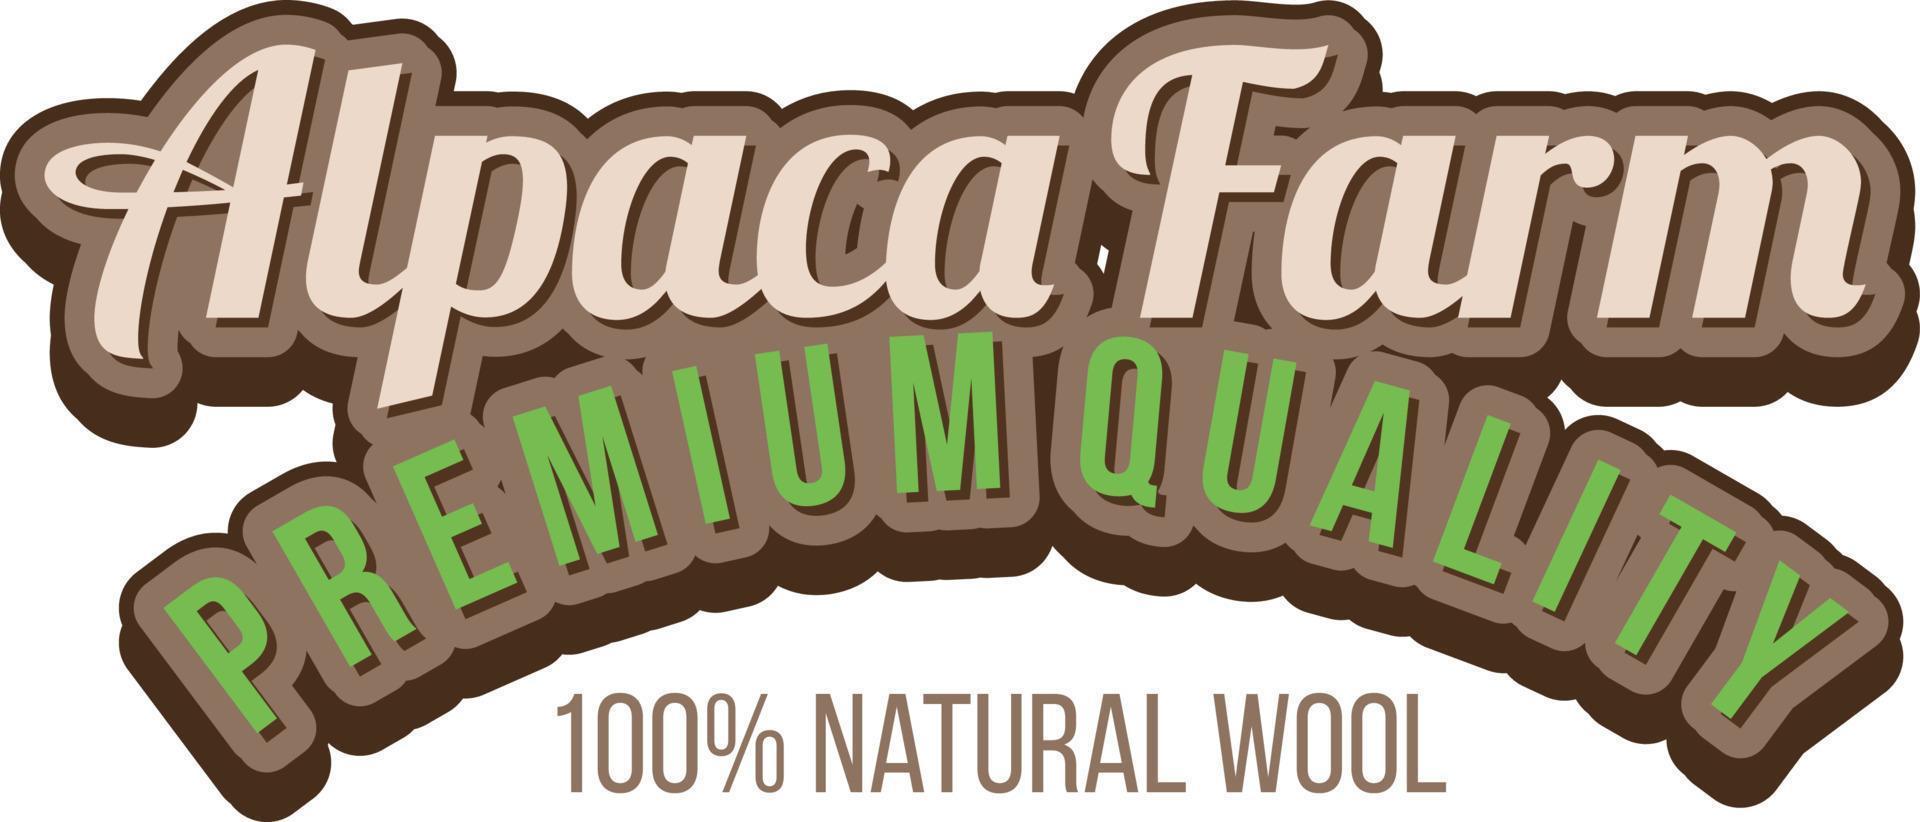 alpacka gård logotyp mall för ullprodukter vektor